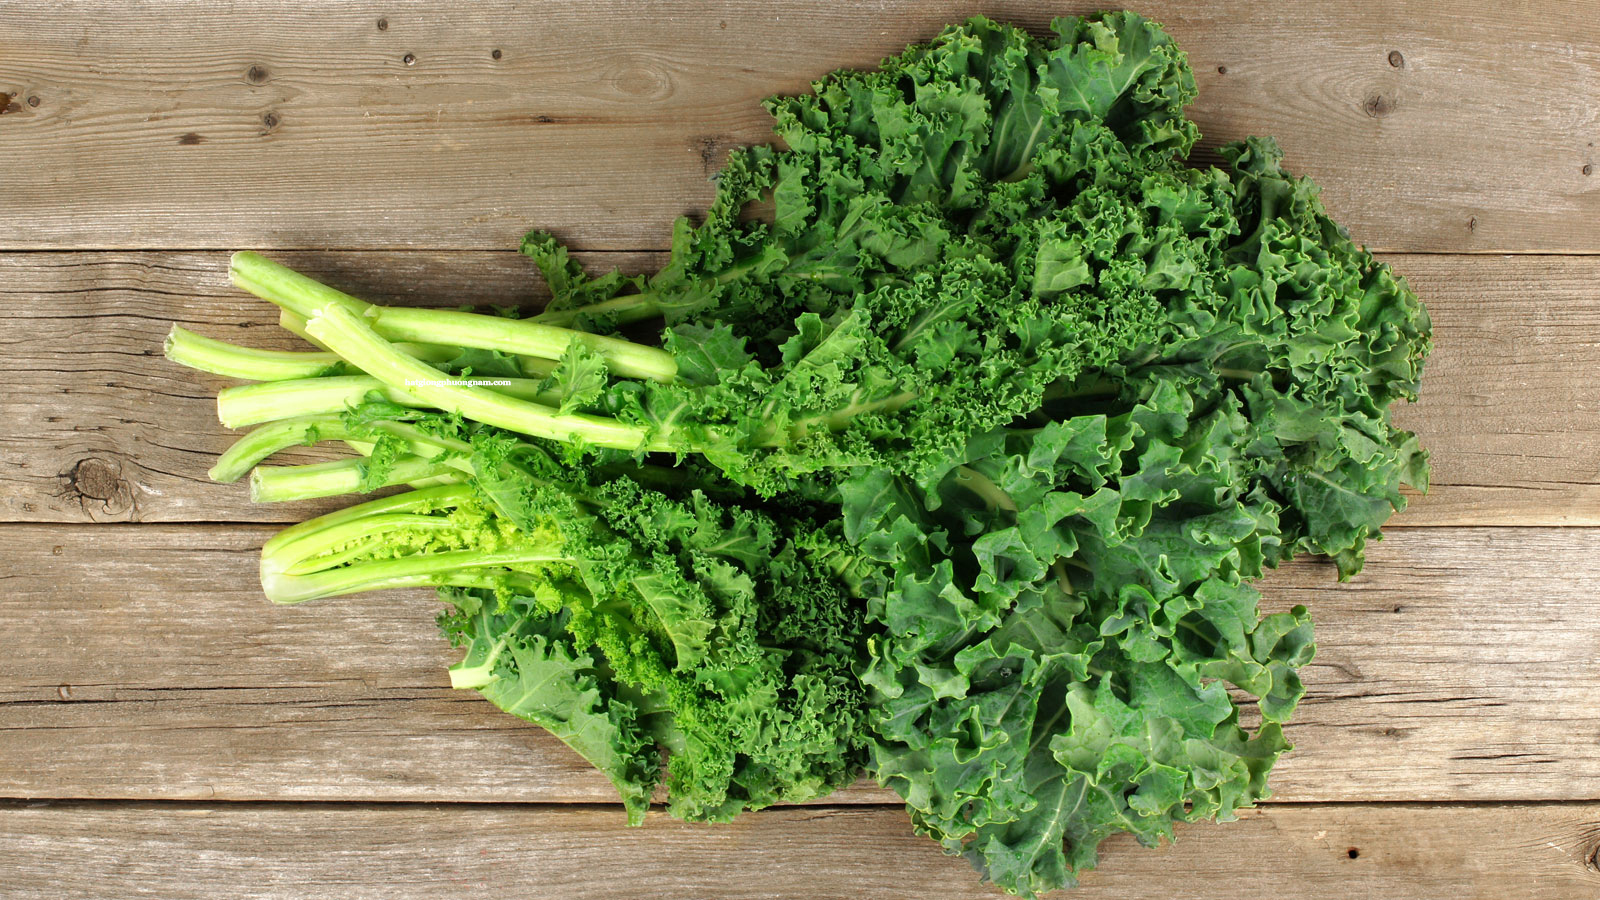 NEW】Hạt Giống Cải Xoăn Kale - Hạt Giống Chất Lượng